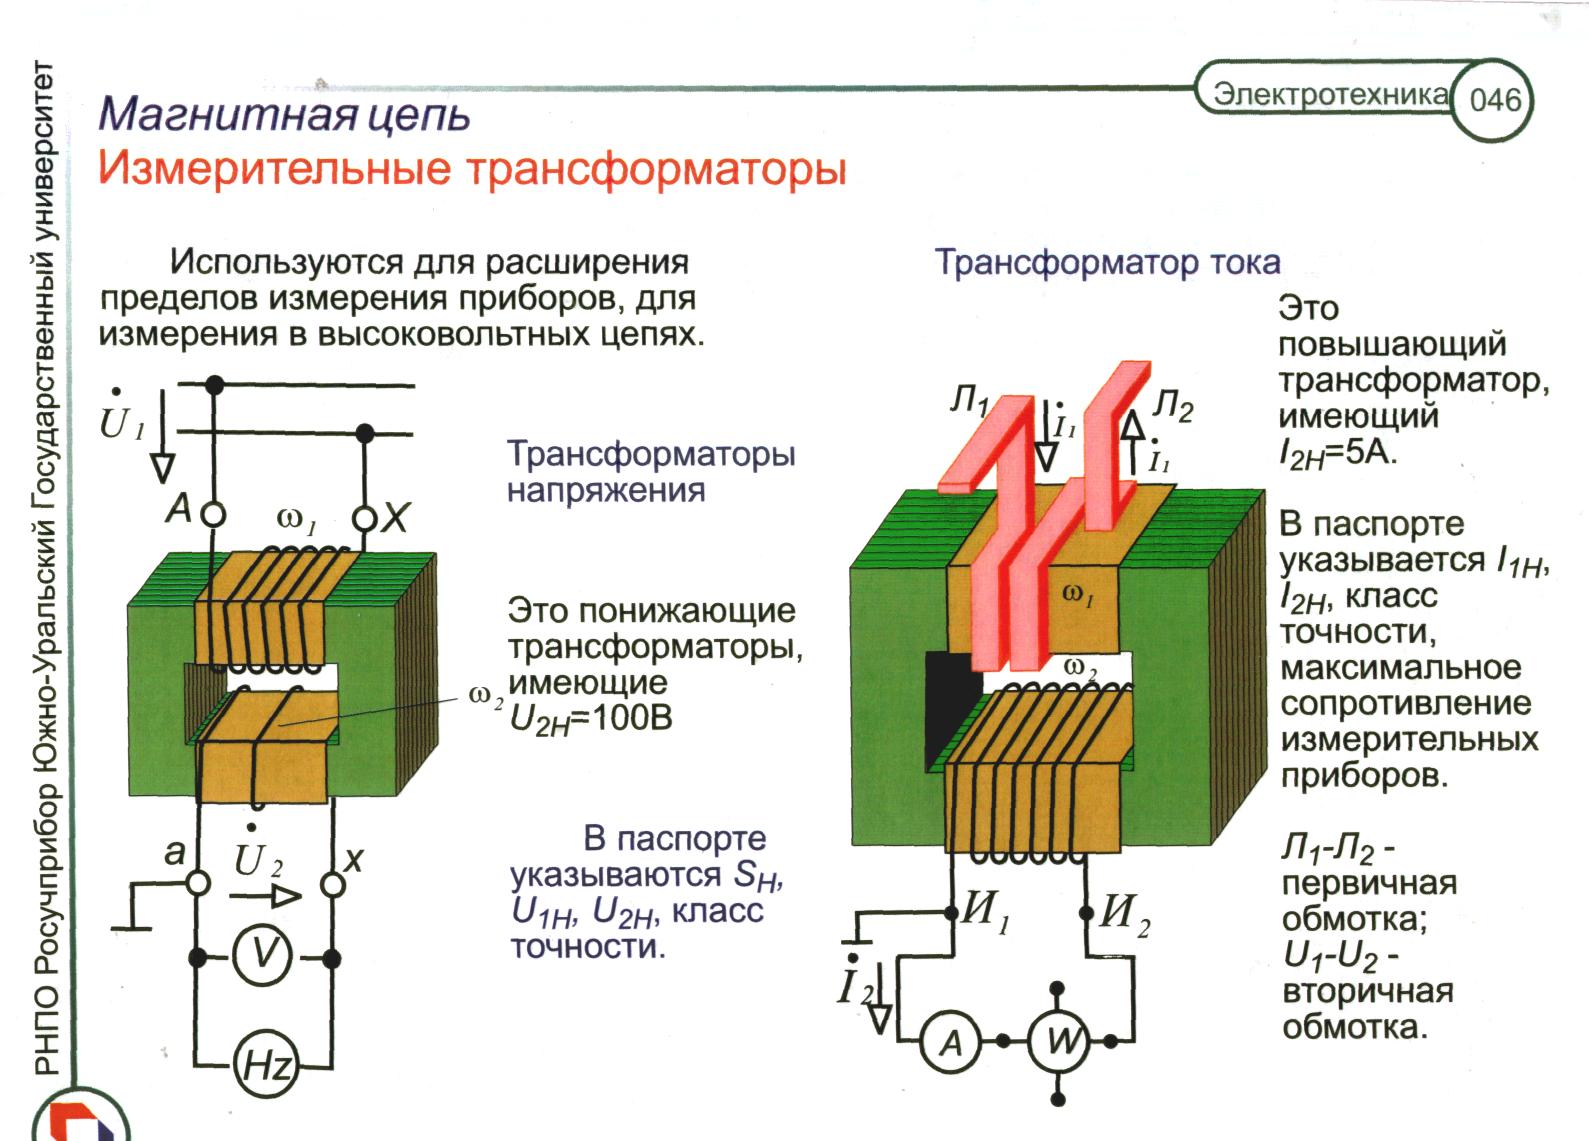 Обмотки измерительного трансформатора